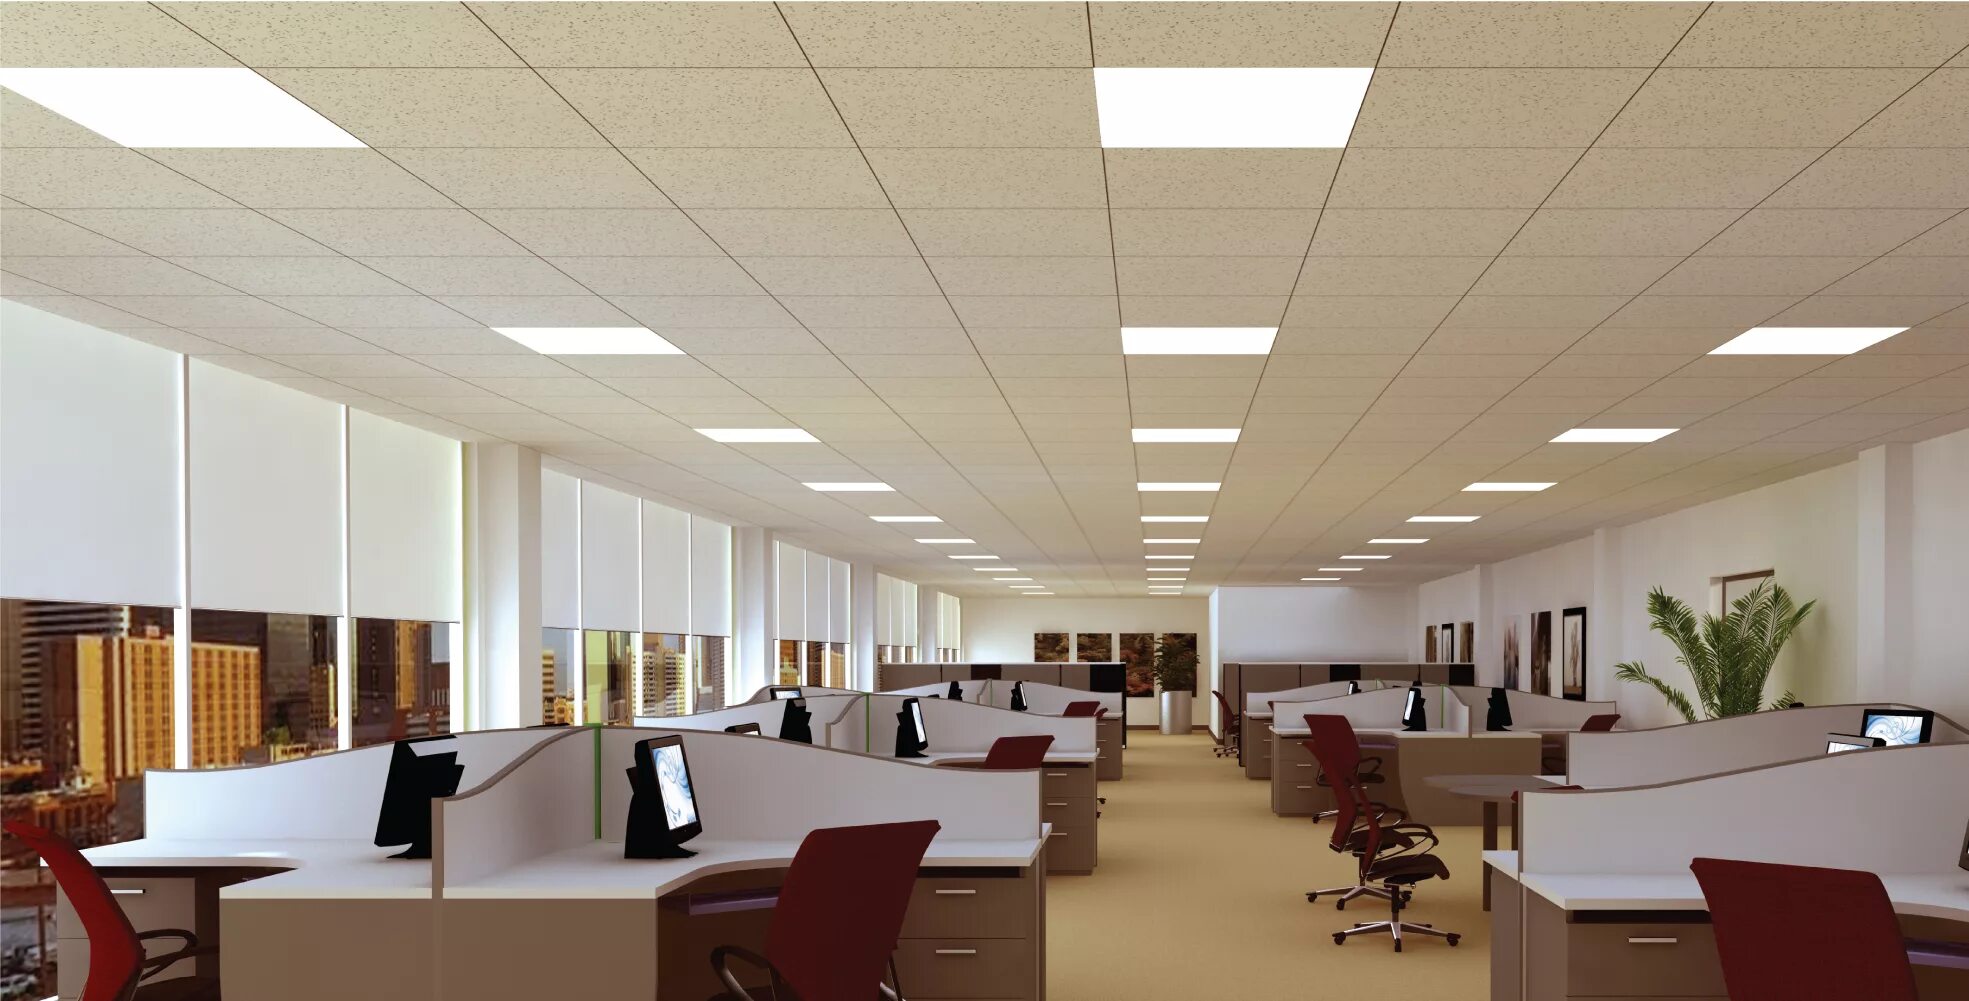 Освещение в школе. Ld150 led Panel. Освещение в офисе. Светодиодное освещение в офисе. Освещение в офисе потолок.